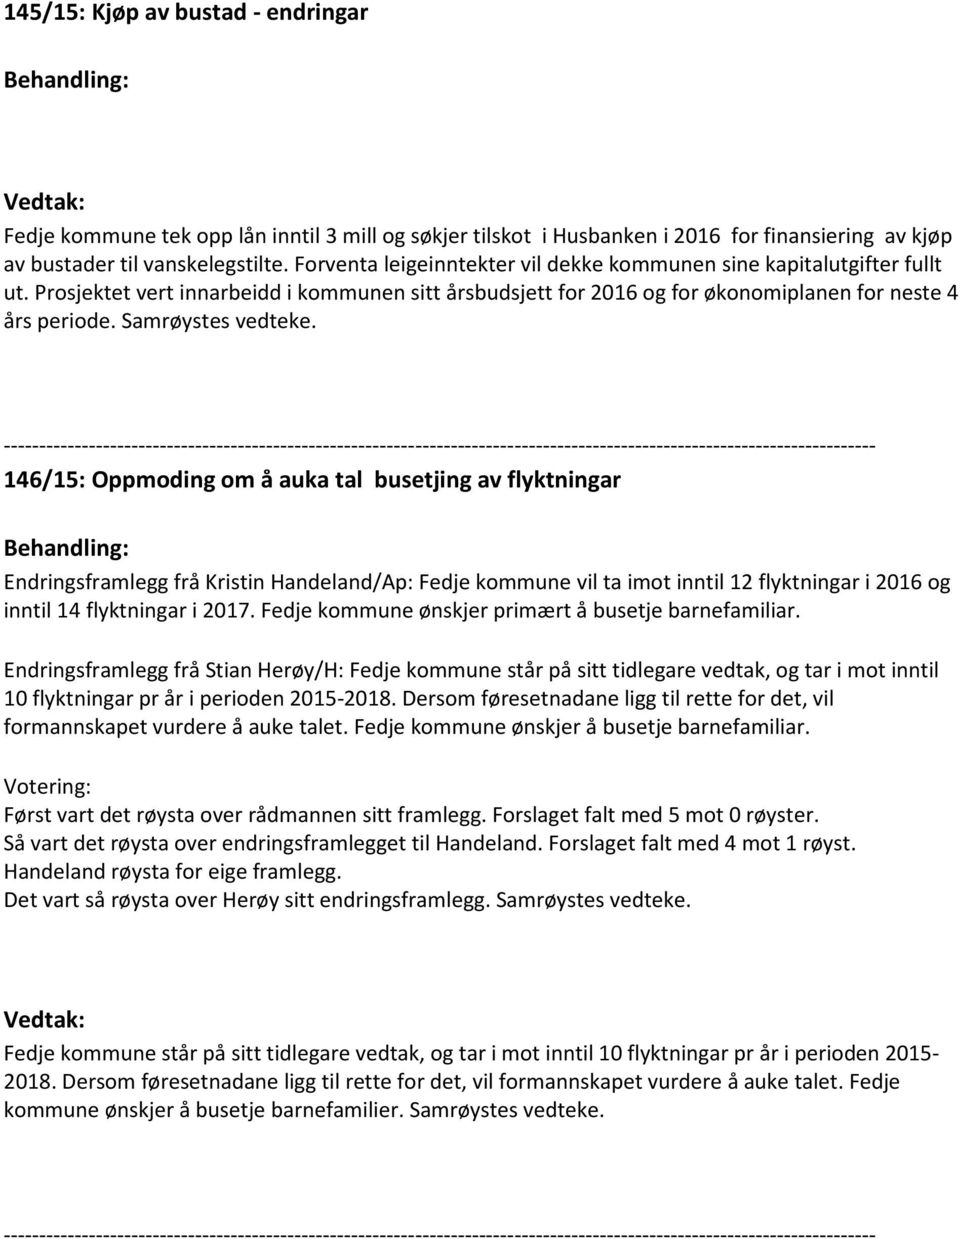 146/15: Oppmoding om å auka tal busetjing av flyktningar Endringsframlegg frå Kristin Handeland/Ap: Fedje kommune vil ta imot inntil 12 flyktningar i 2016 og inntil 14 flyktningar i 2017.